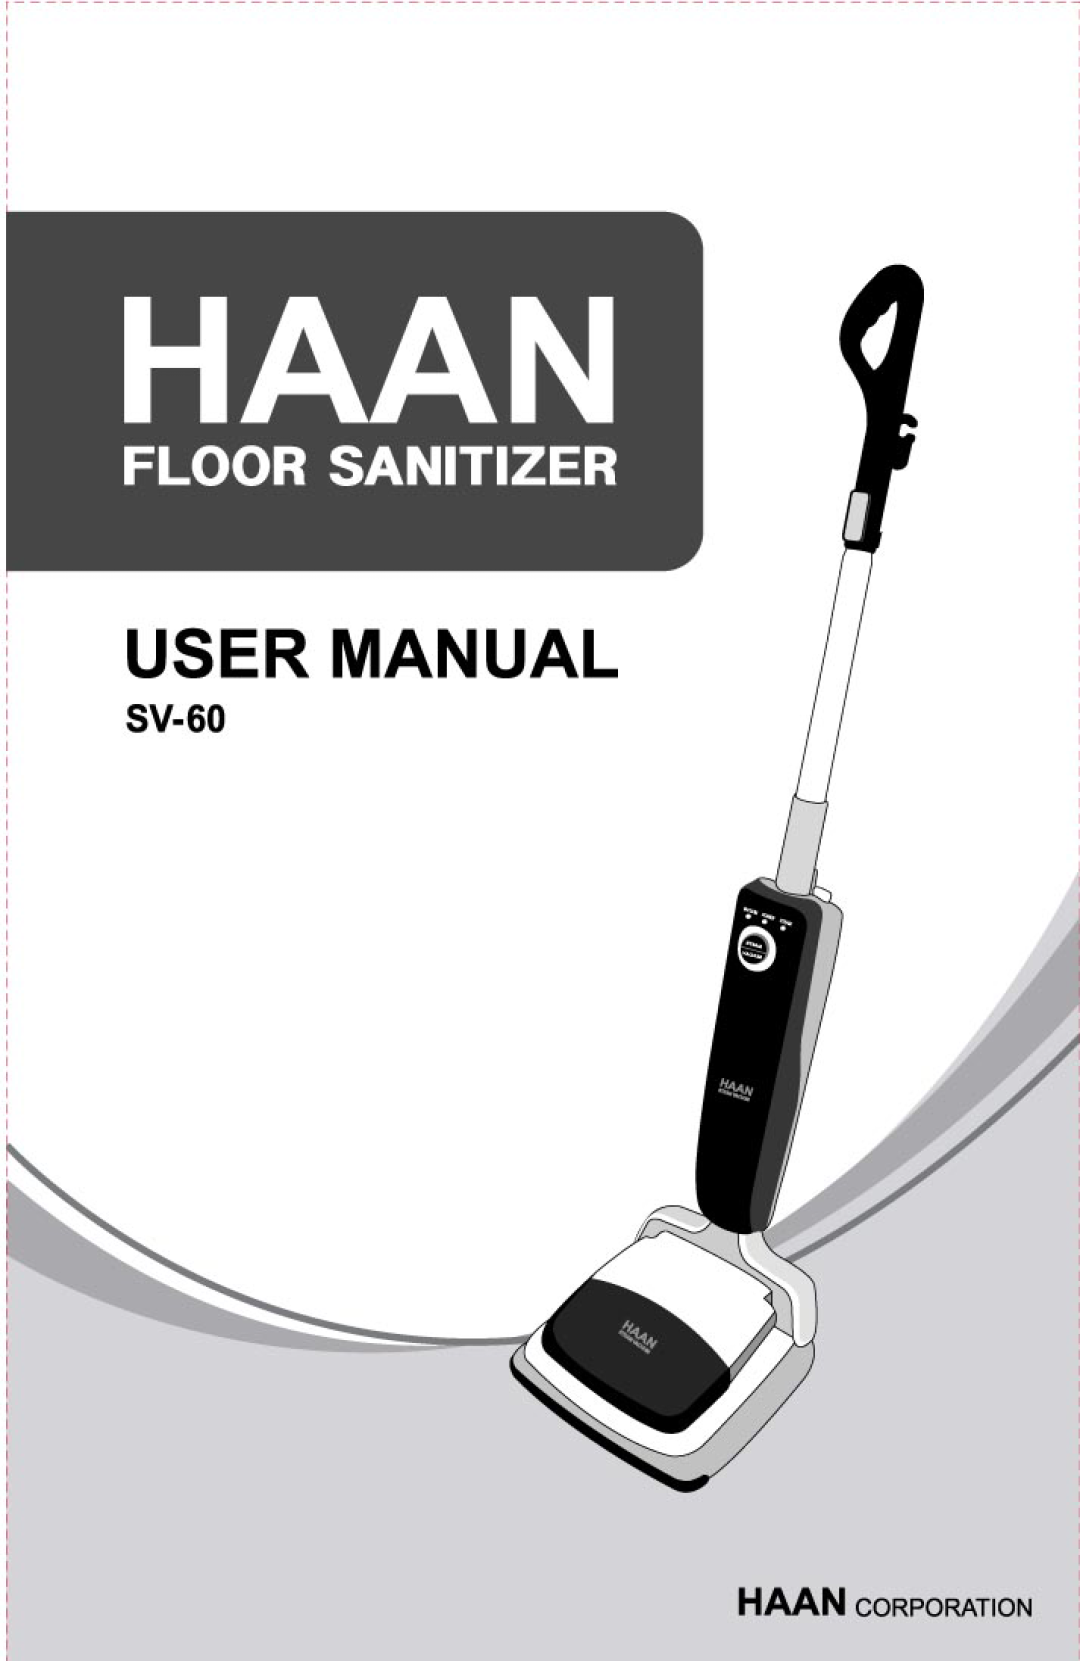 Haan SV-60 manual 